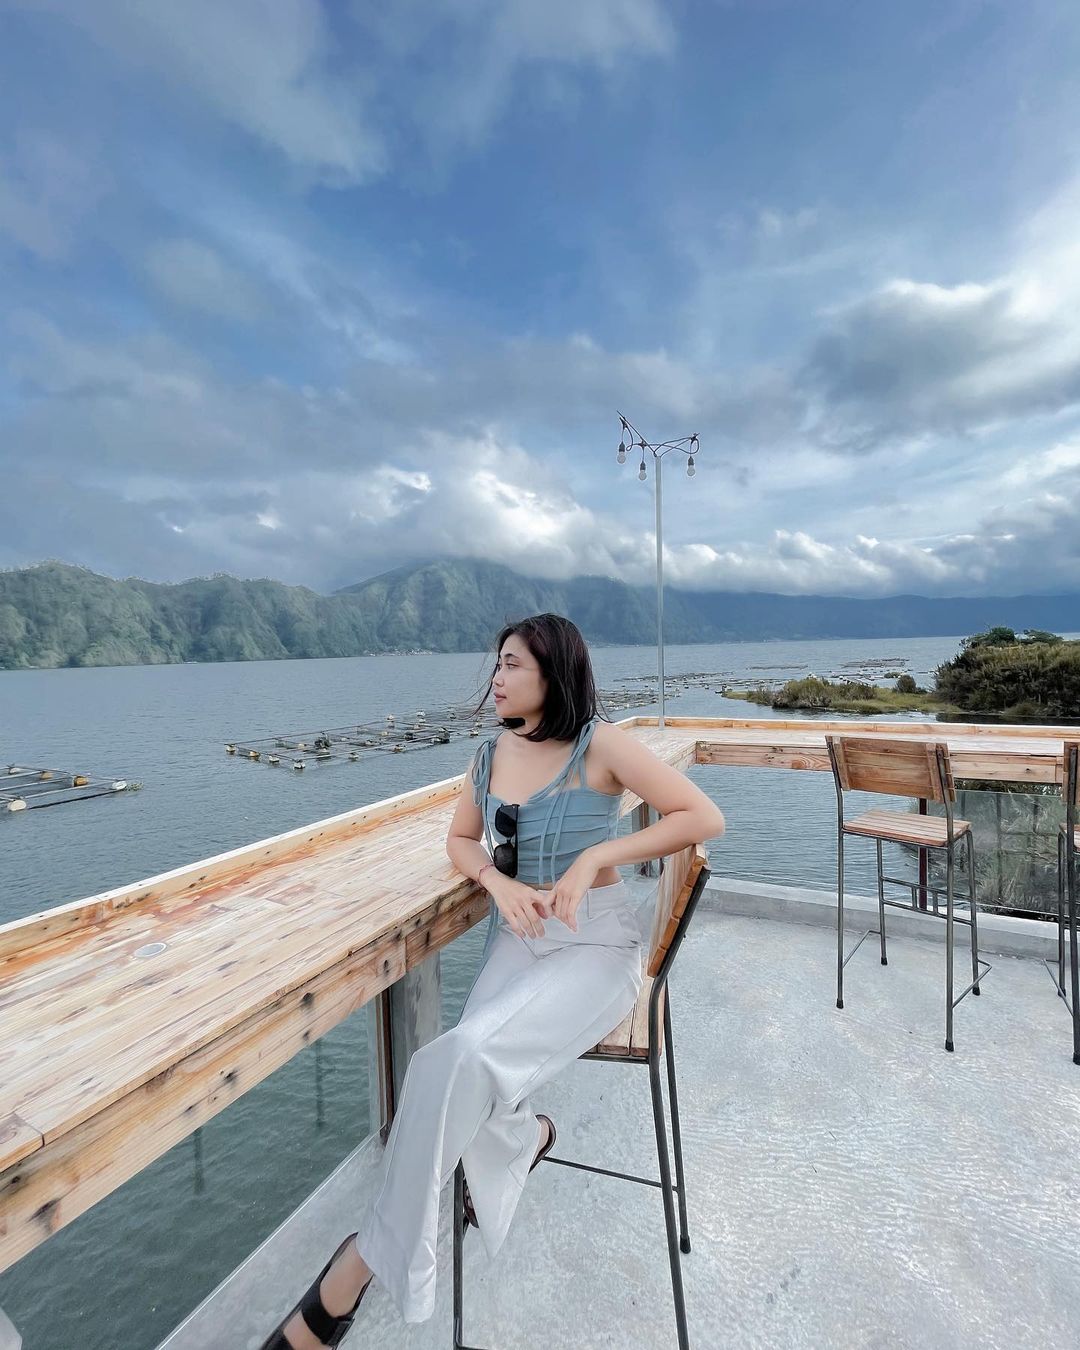 Pemandangan Di Lake Garden Bali Villa Image From @windiutari